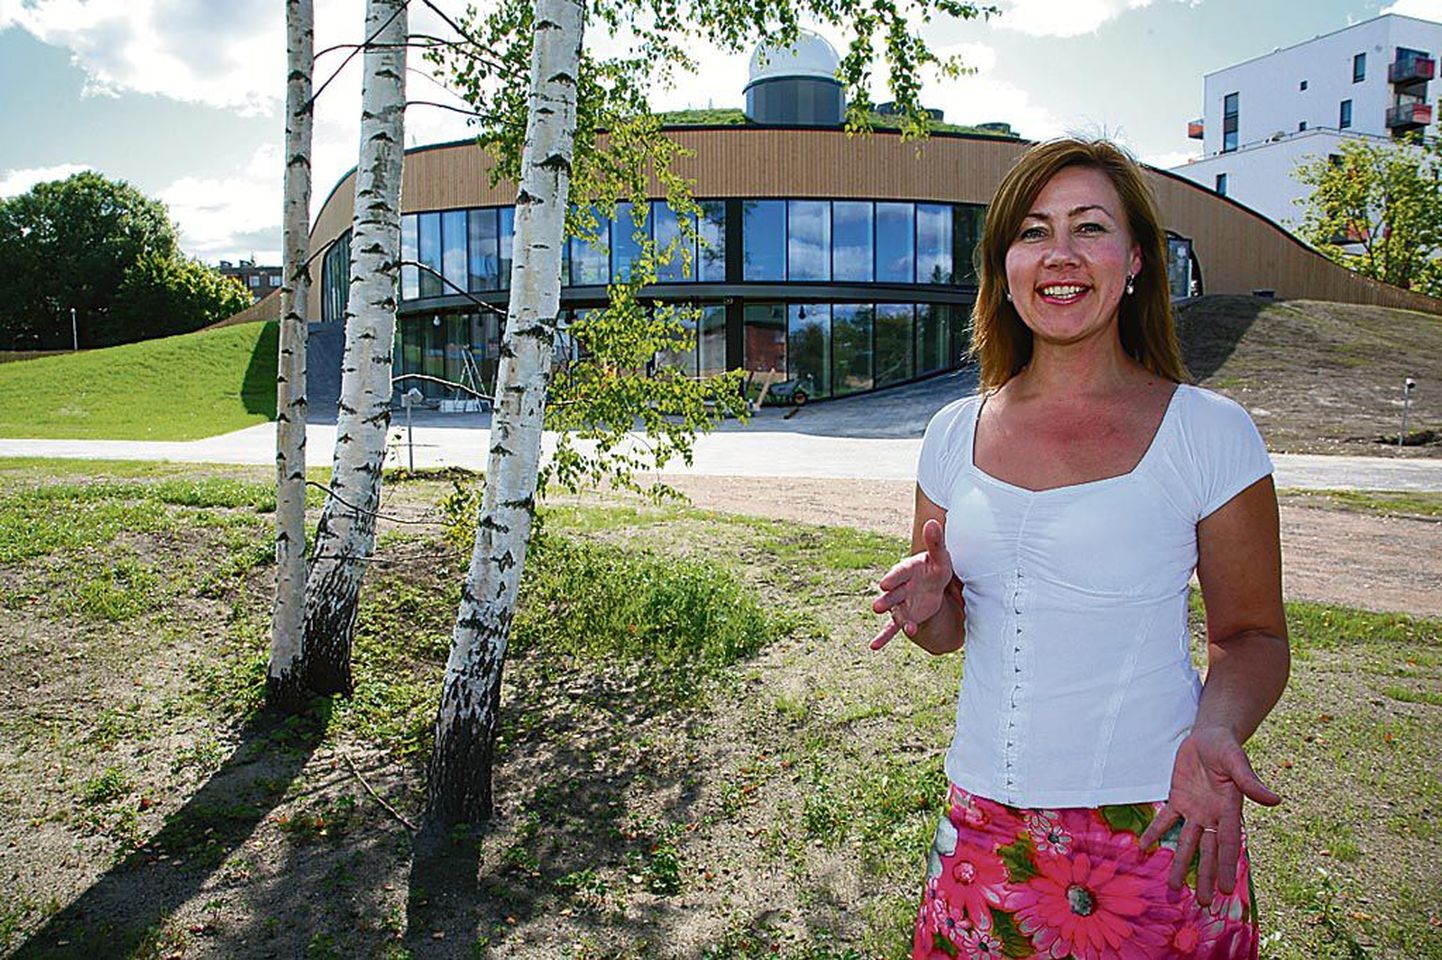 Projektijuht Merle Einola avaldas lootust, et keskkonnahariduskeskuse murukatusega maja saab avamiseks valmis just sellises mahus nagu plaanitud.